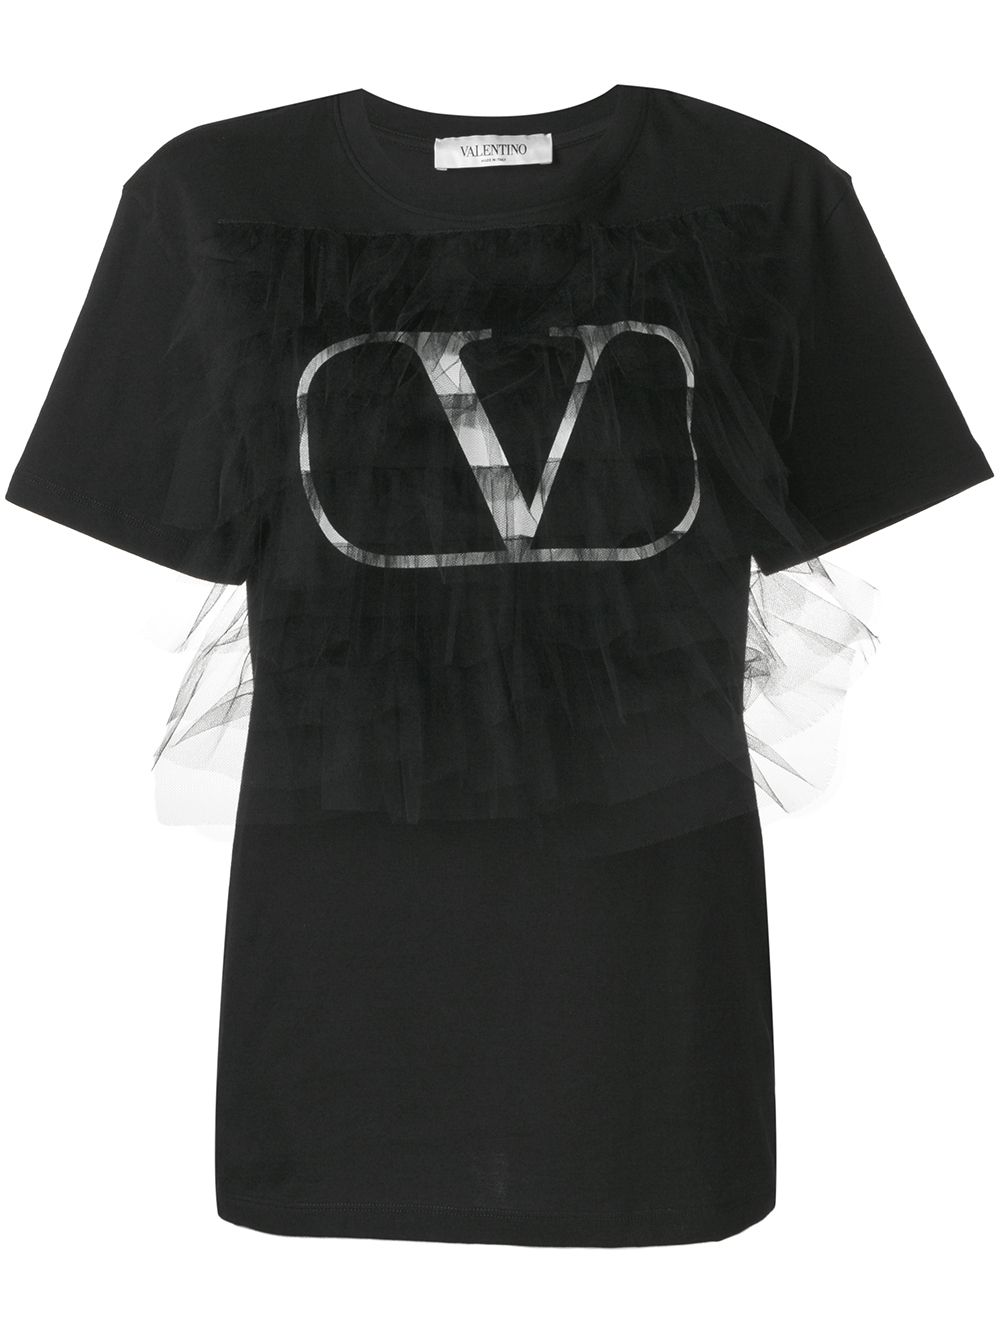 фото Valentino футболка с принтом go logo